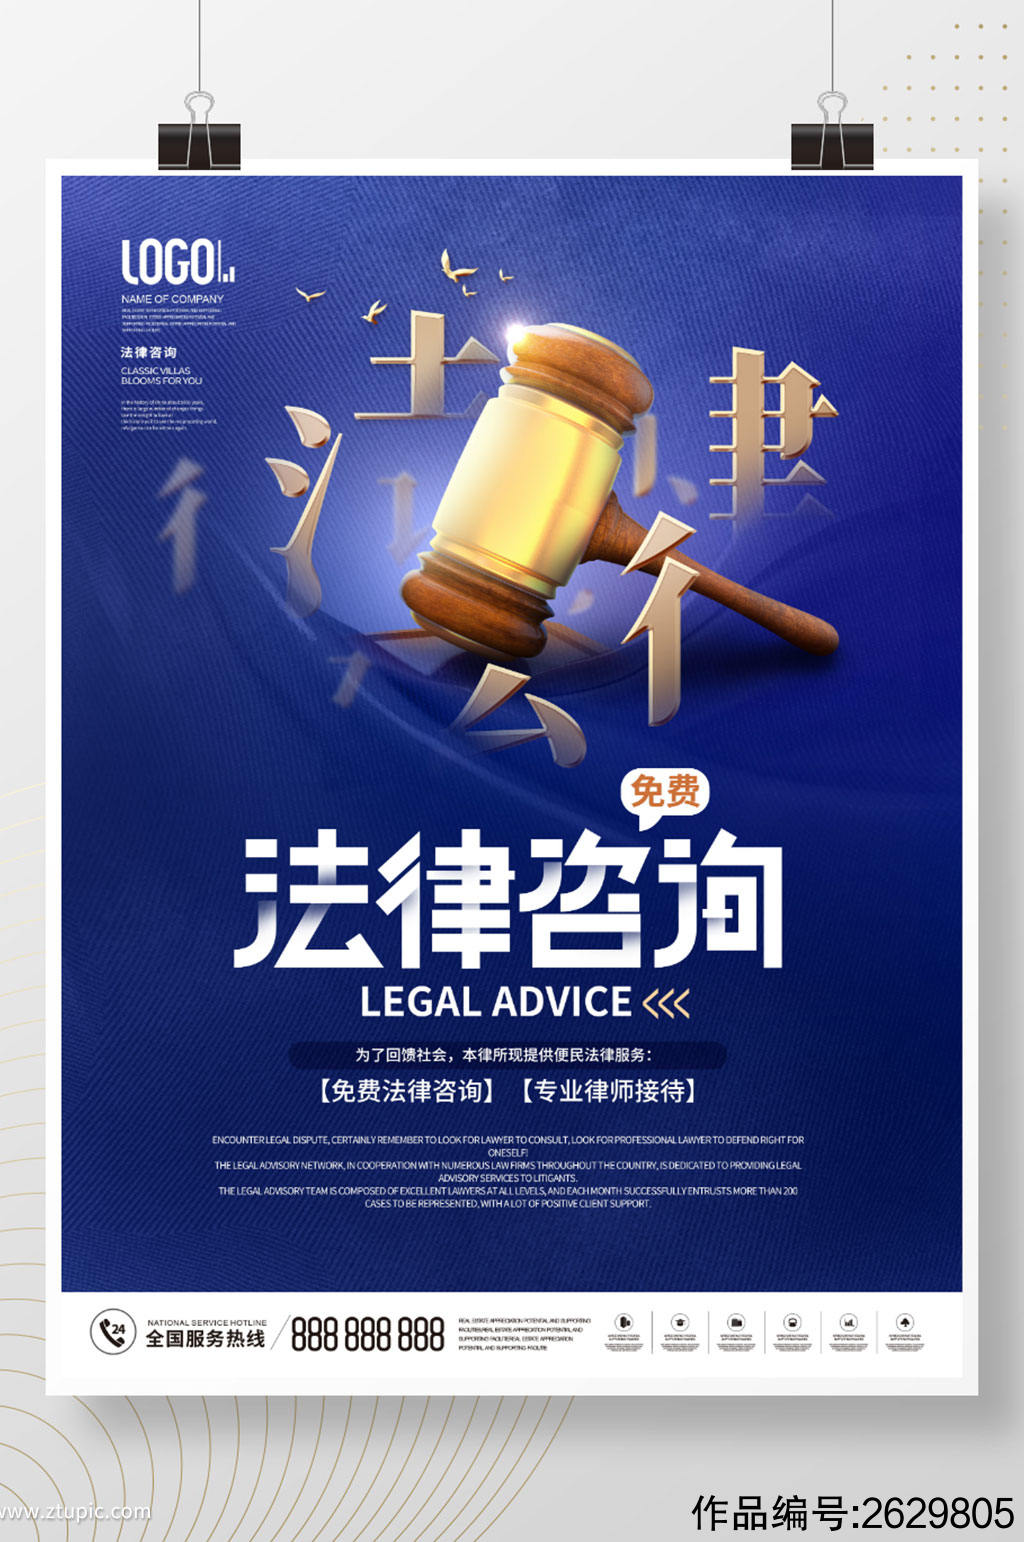 简约律师事务所介绍免费法律咨询宣传海报